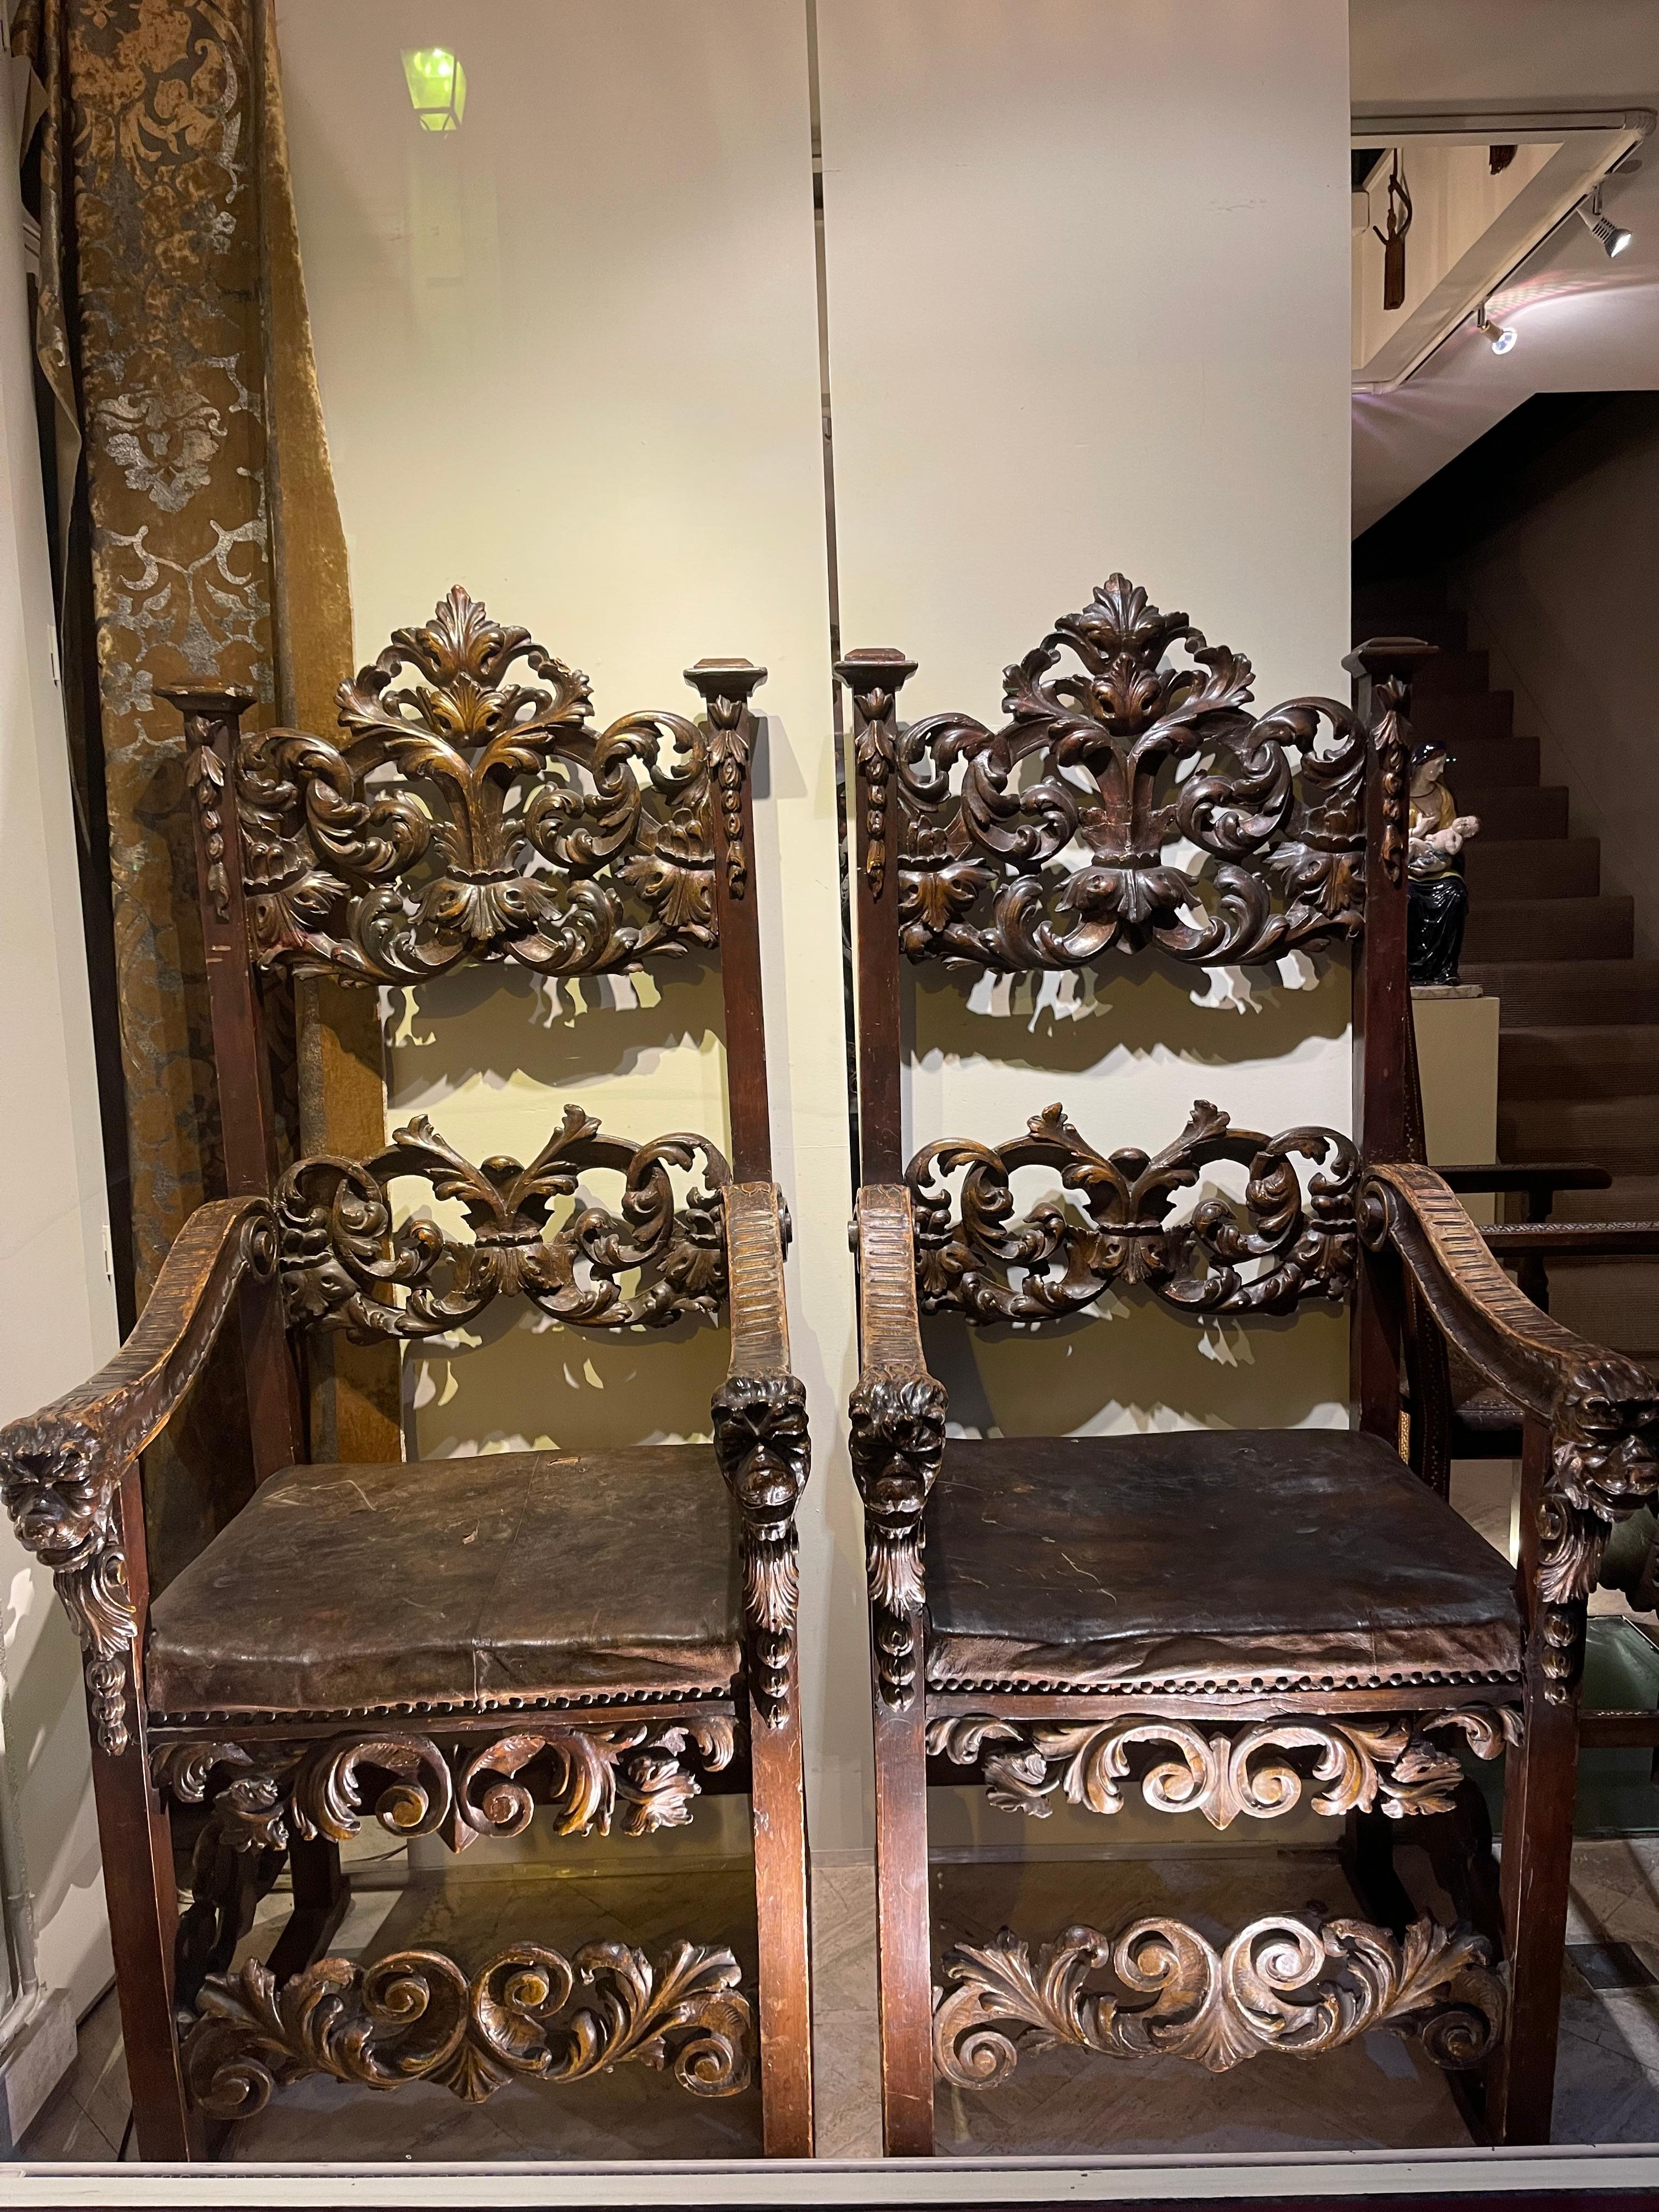 Außergewöhnliches Paar Sessel, aus geschnitztem Holz, verziert mit Akanthusblättern und Voluten, die Armlehnen enden in Löwenköpfen, die Fußstützen in Delphinköpfen.
Spuren von 